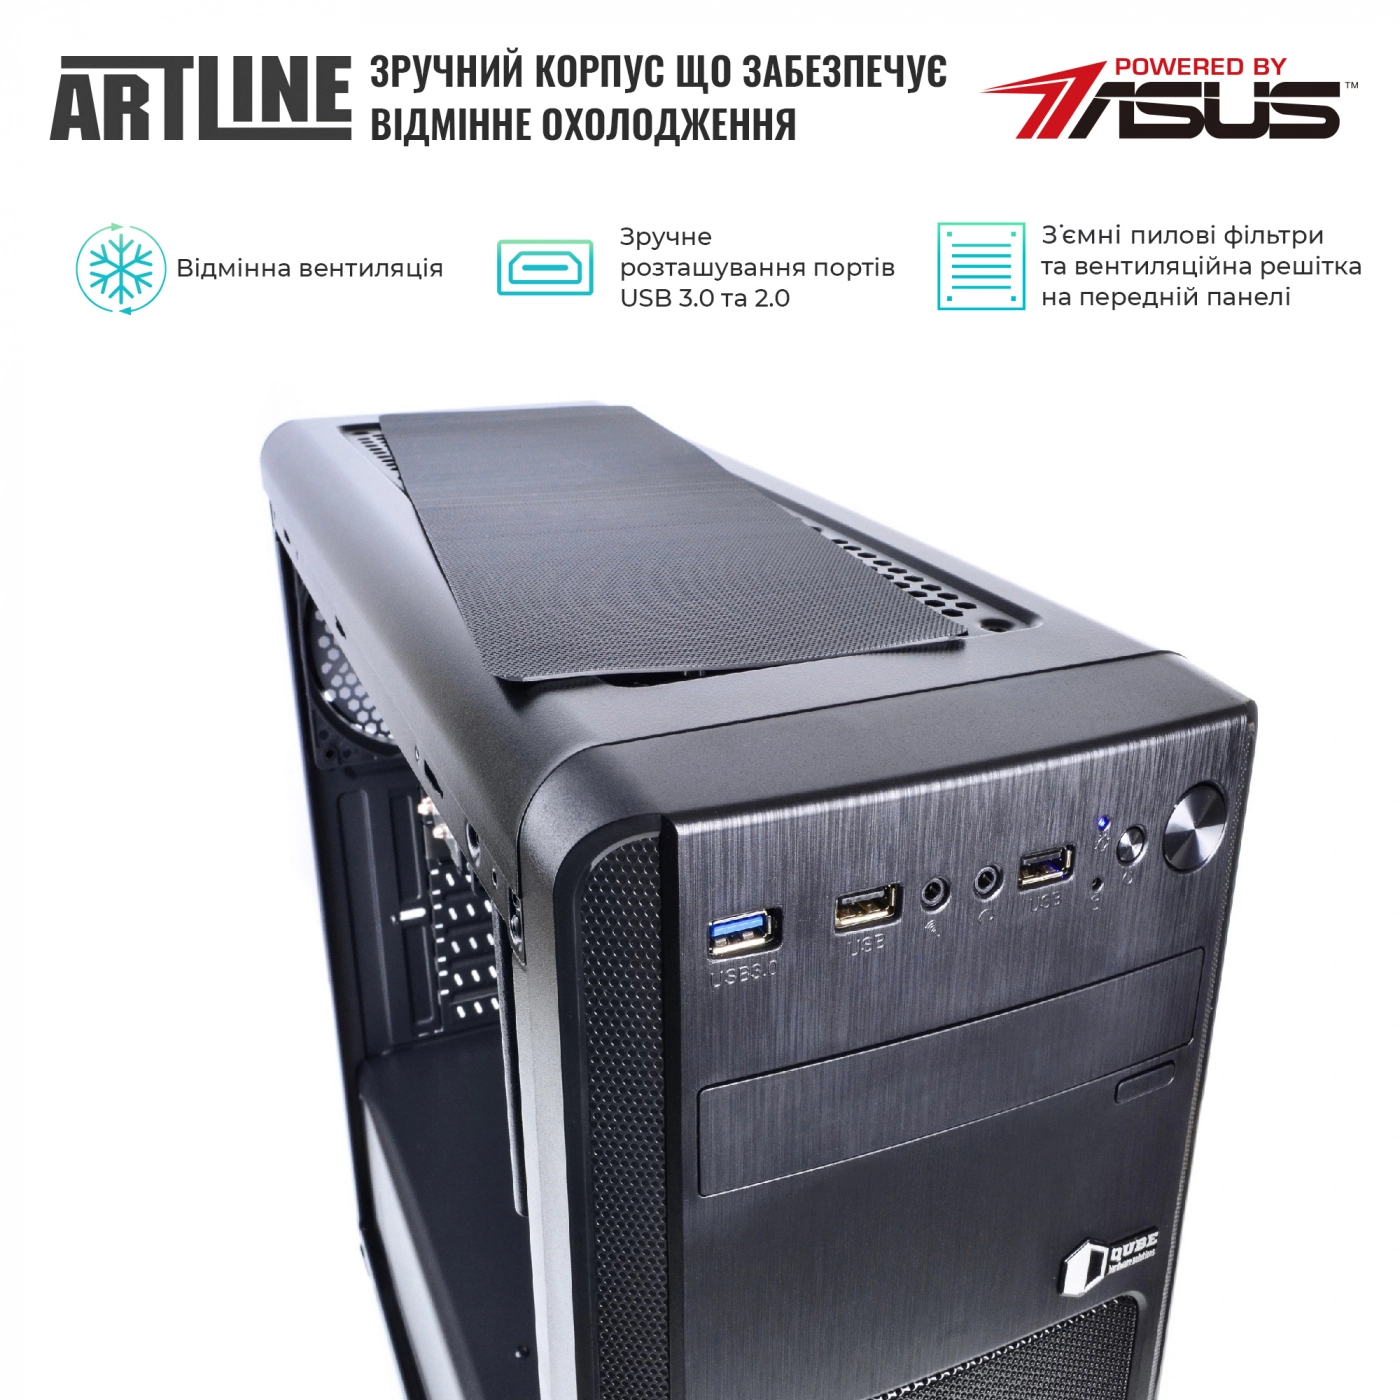 Купить Сервер ARTLINE Business T25v17 - фото 2